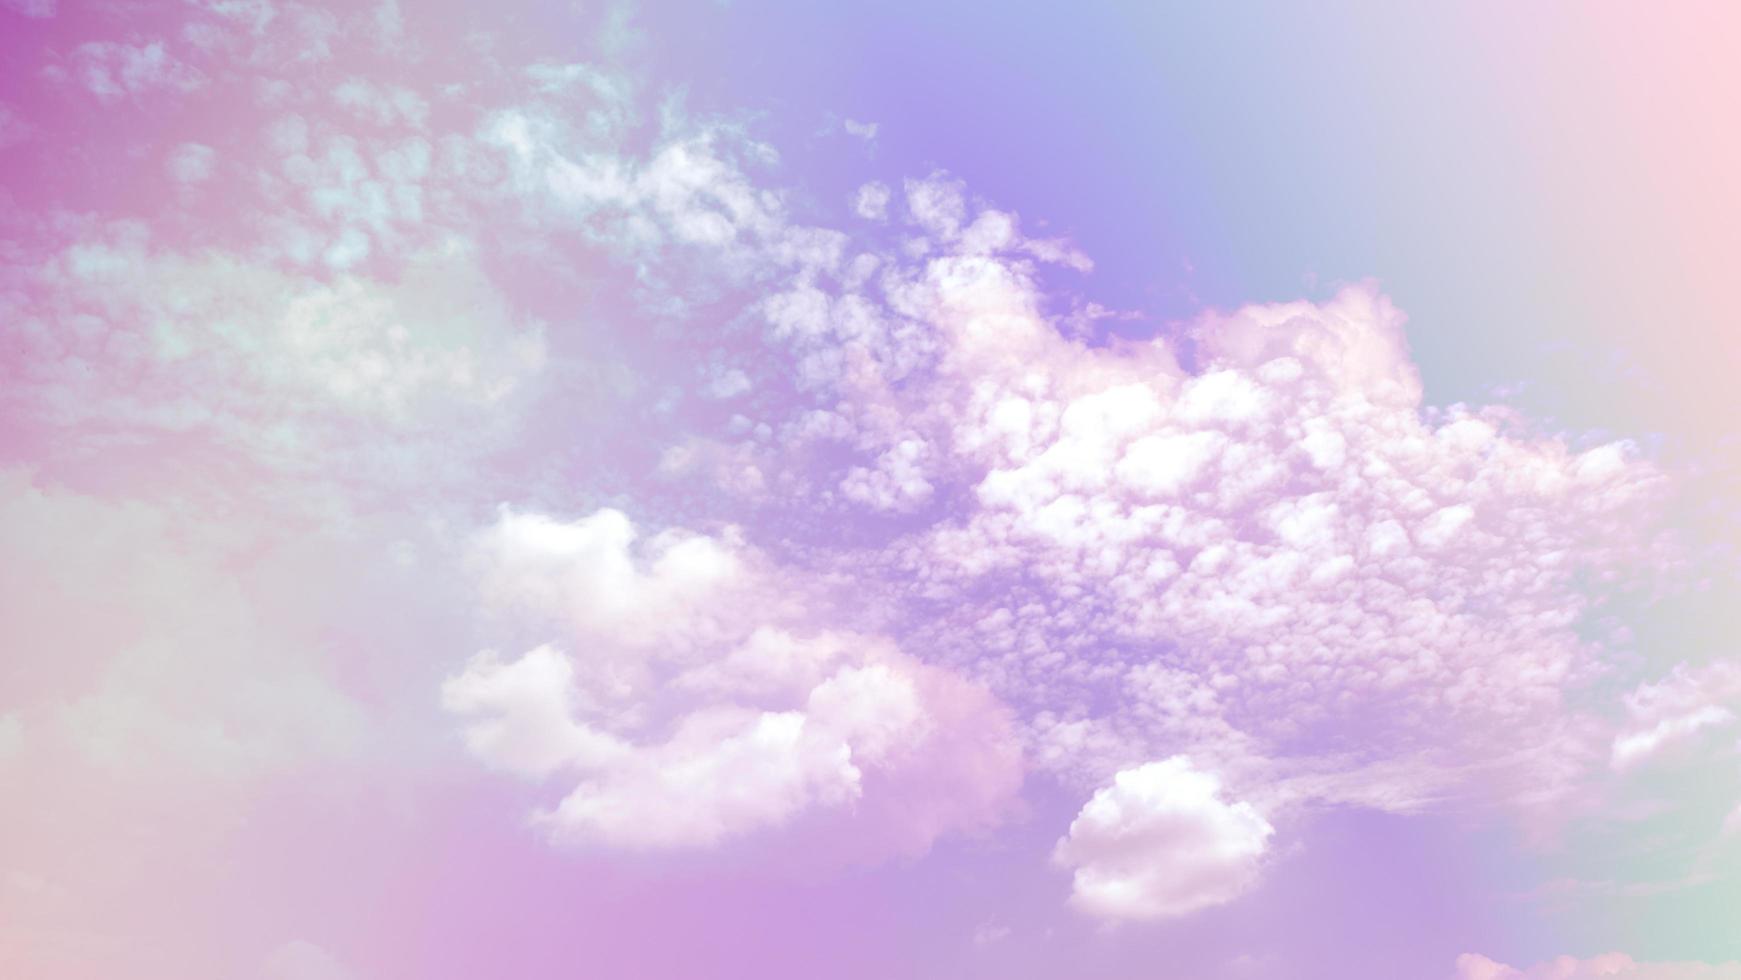 schönheit süß pastell lila bunt mit flauschigen wolken am himmel. mehrfarbiges Regenbogenbild. abstrakte Fantasie wachsendes Licht foto